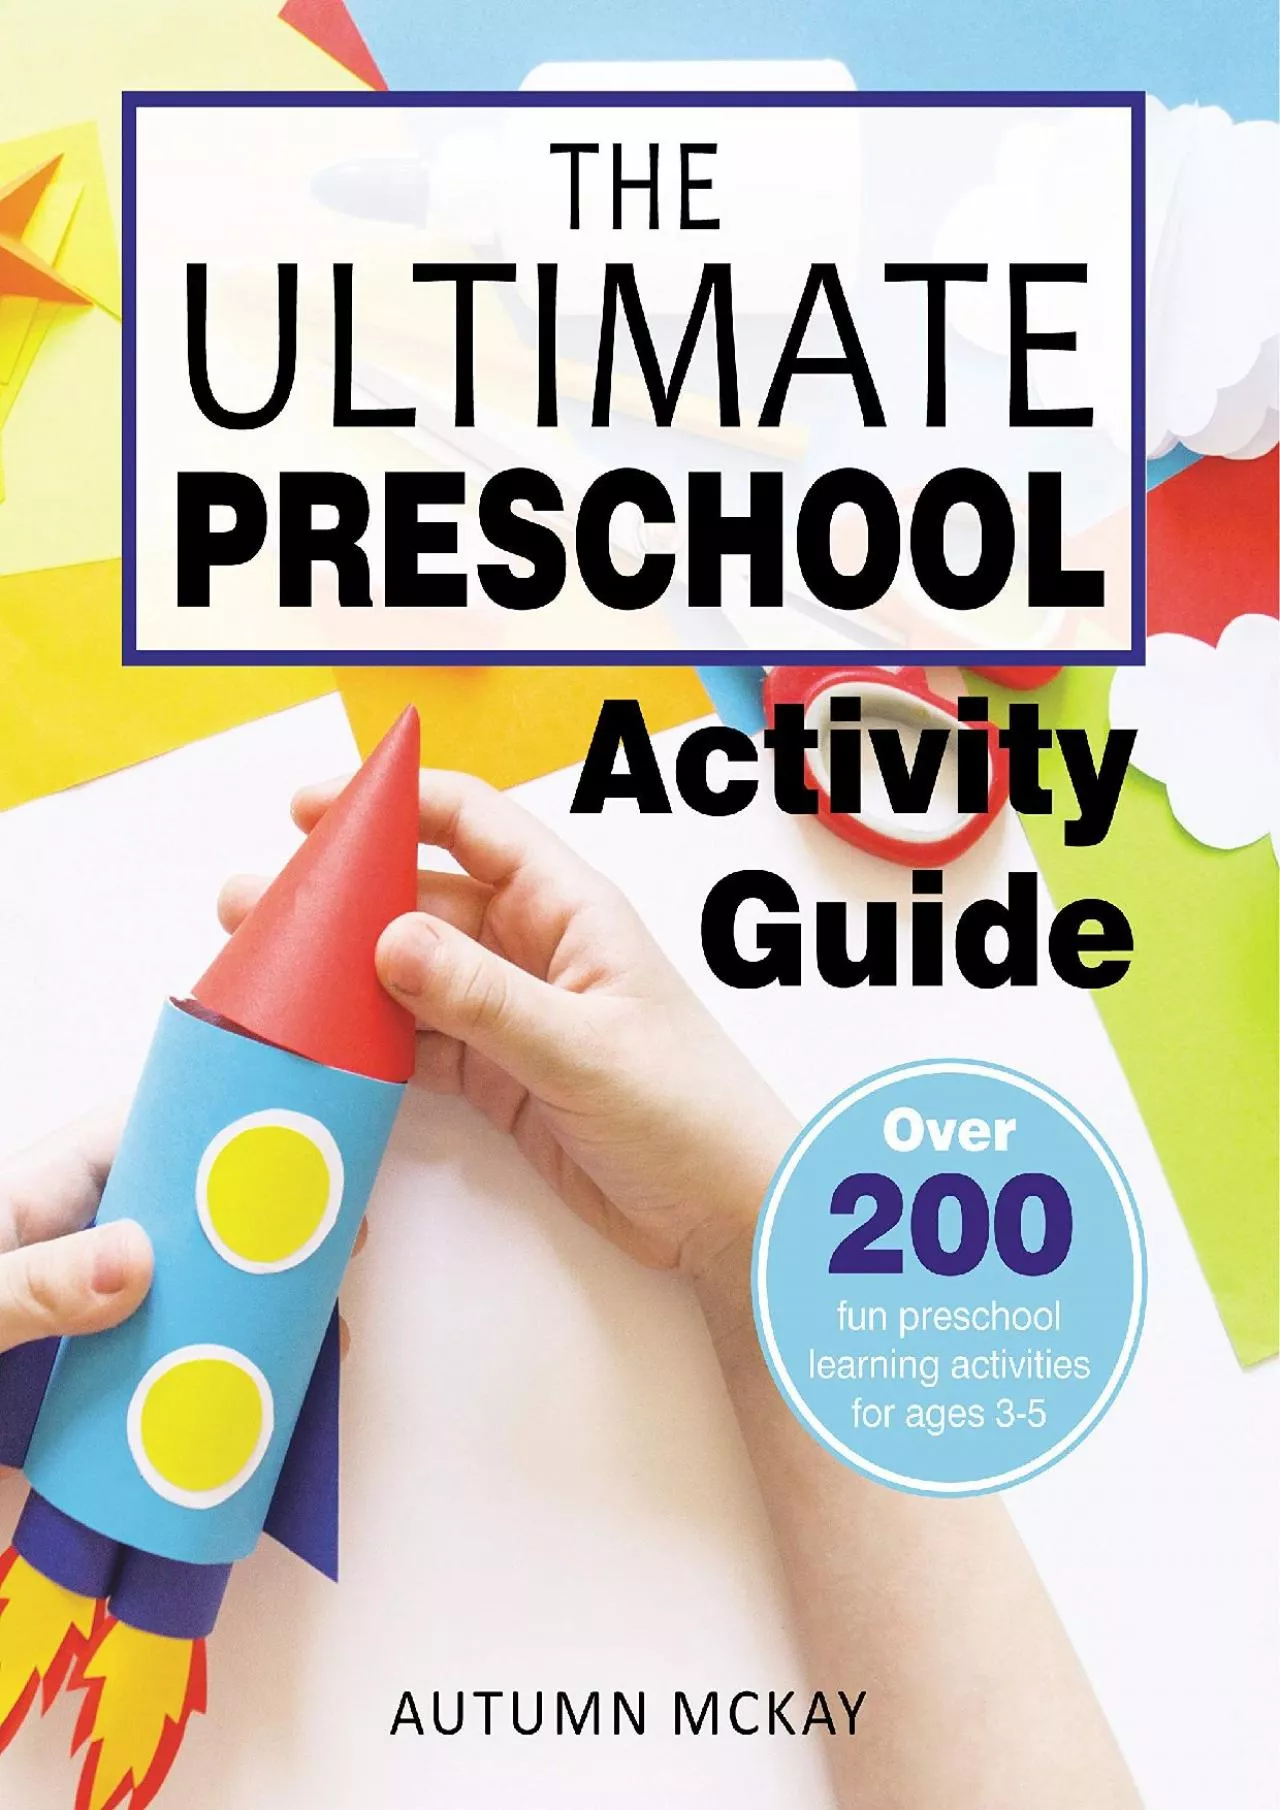 [DOWNLOAD] The Ultimate Preschool Activity Guide: Over 200 fun preschool learning activities